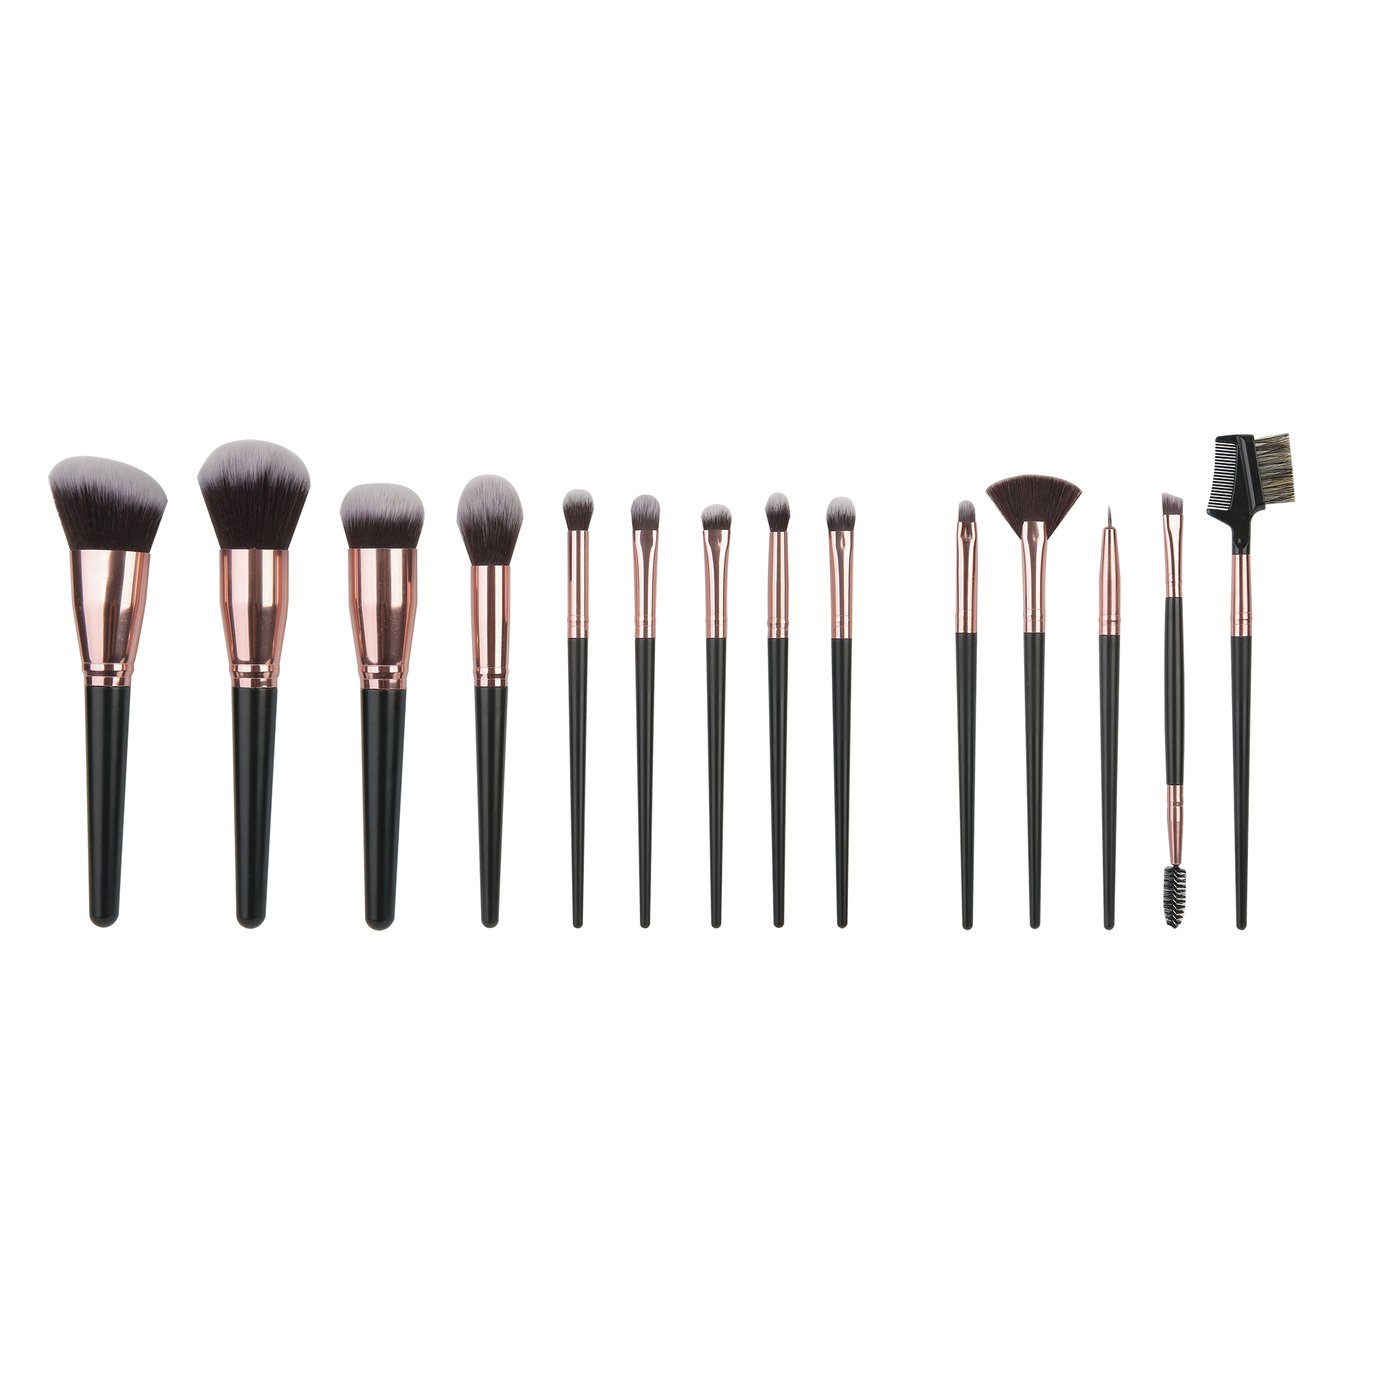 SY Black Makeup Brush Set- 15pc